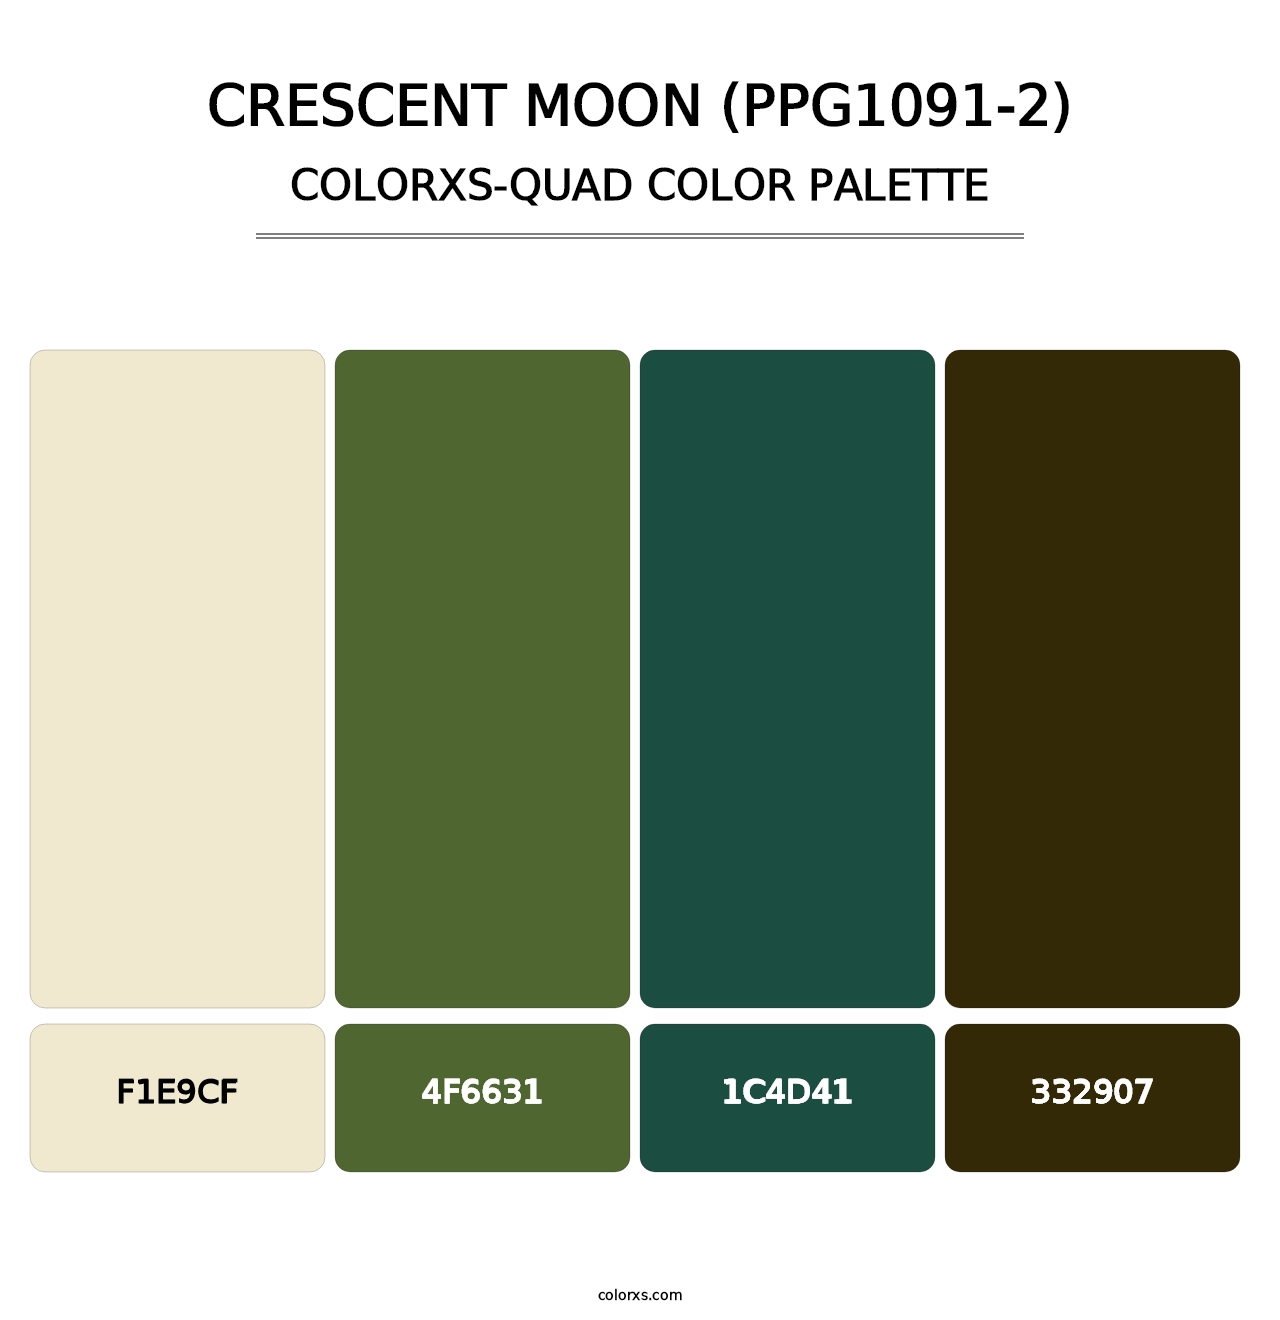 Crescent Moon (PPG1091-2) - Colorxs Quad Palette